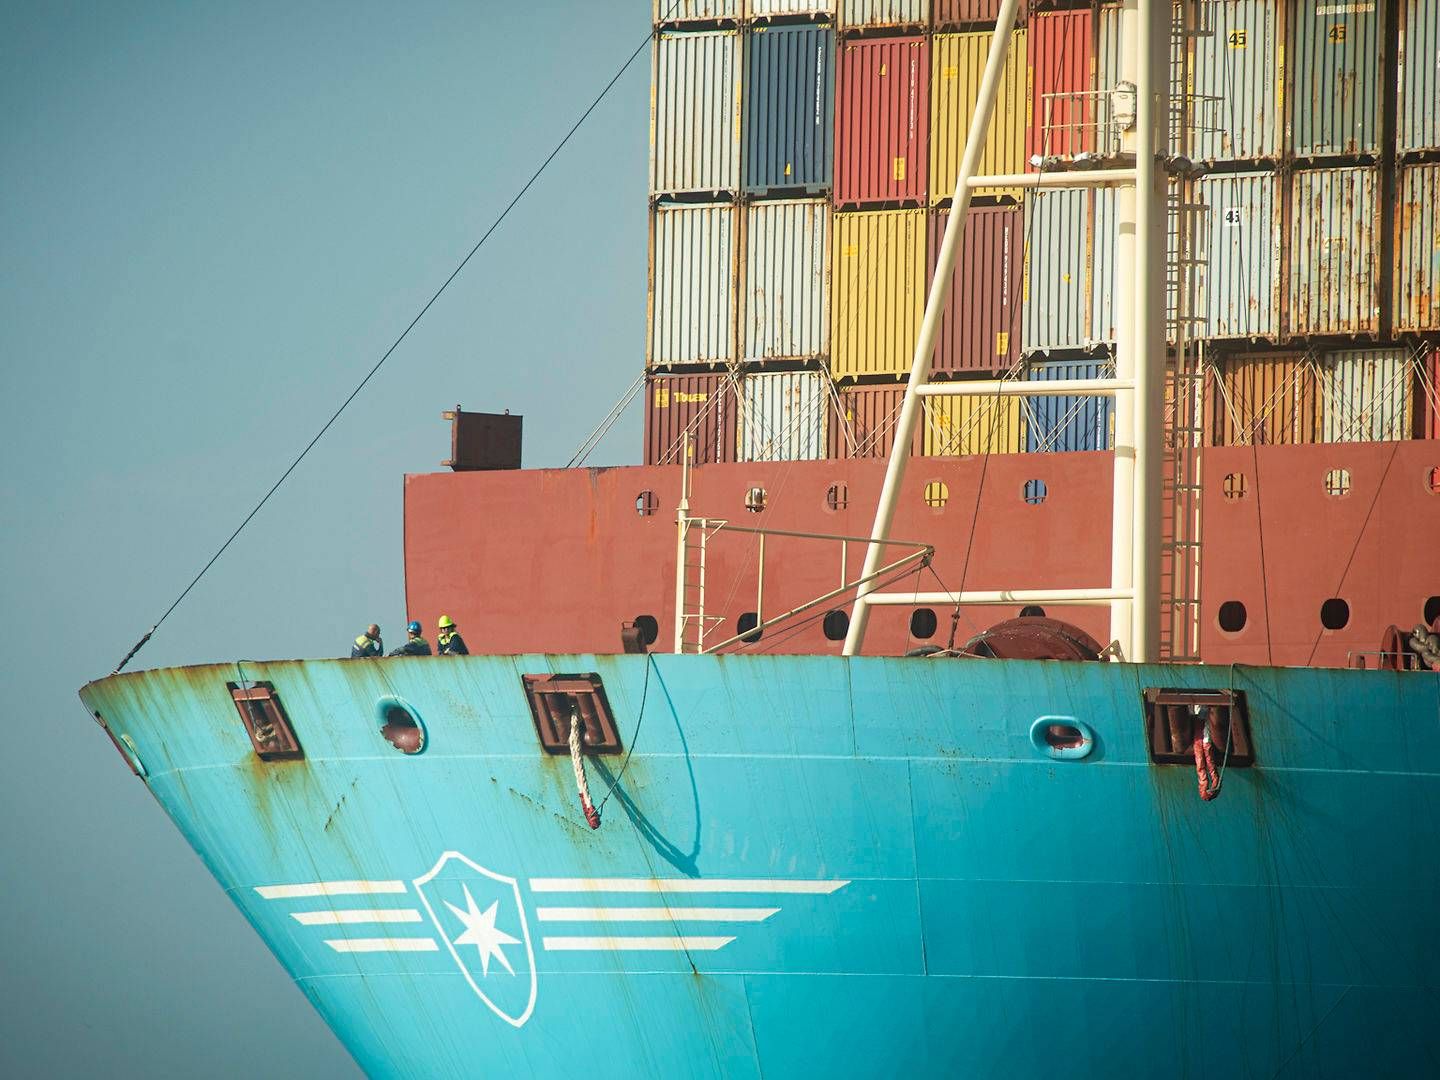 Maersk råder aktuelt over på 735 skibe. Heraf er 405 skibe chartrede, og derfor ligger der en stor opgave i chartermarkedet, når det kommer til rederiets nye klimamål for 2040. | Foto: Marcos Morenos/AP/Ritzau Scanpix